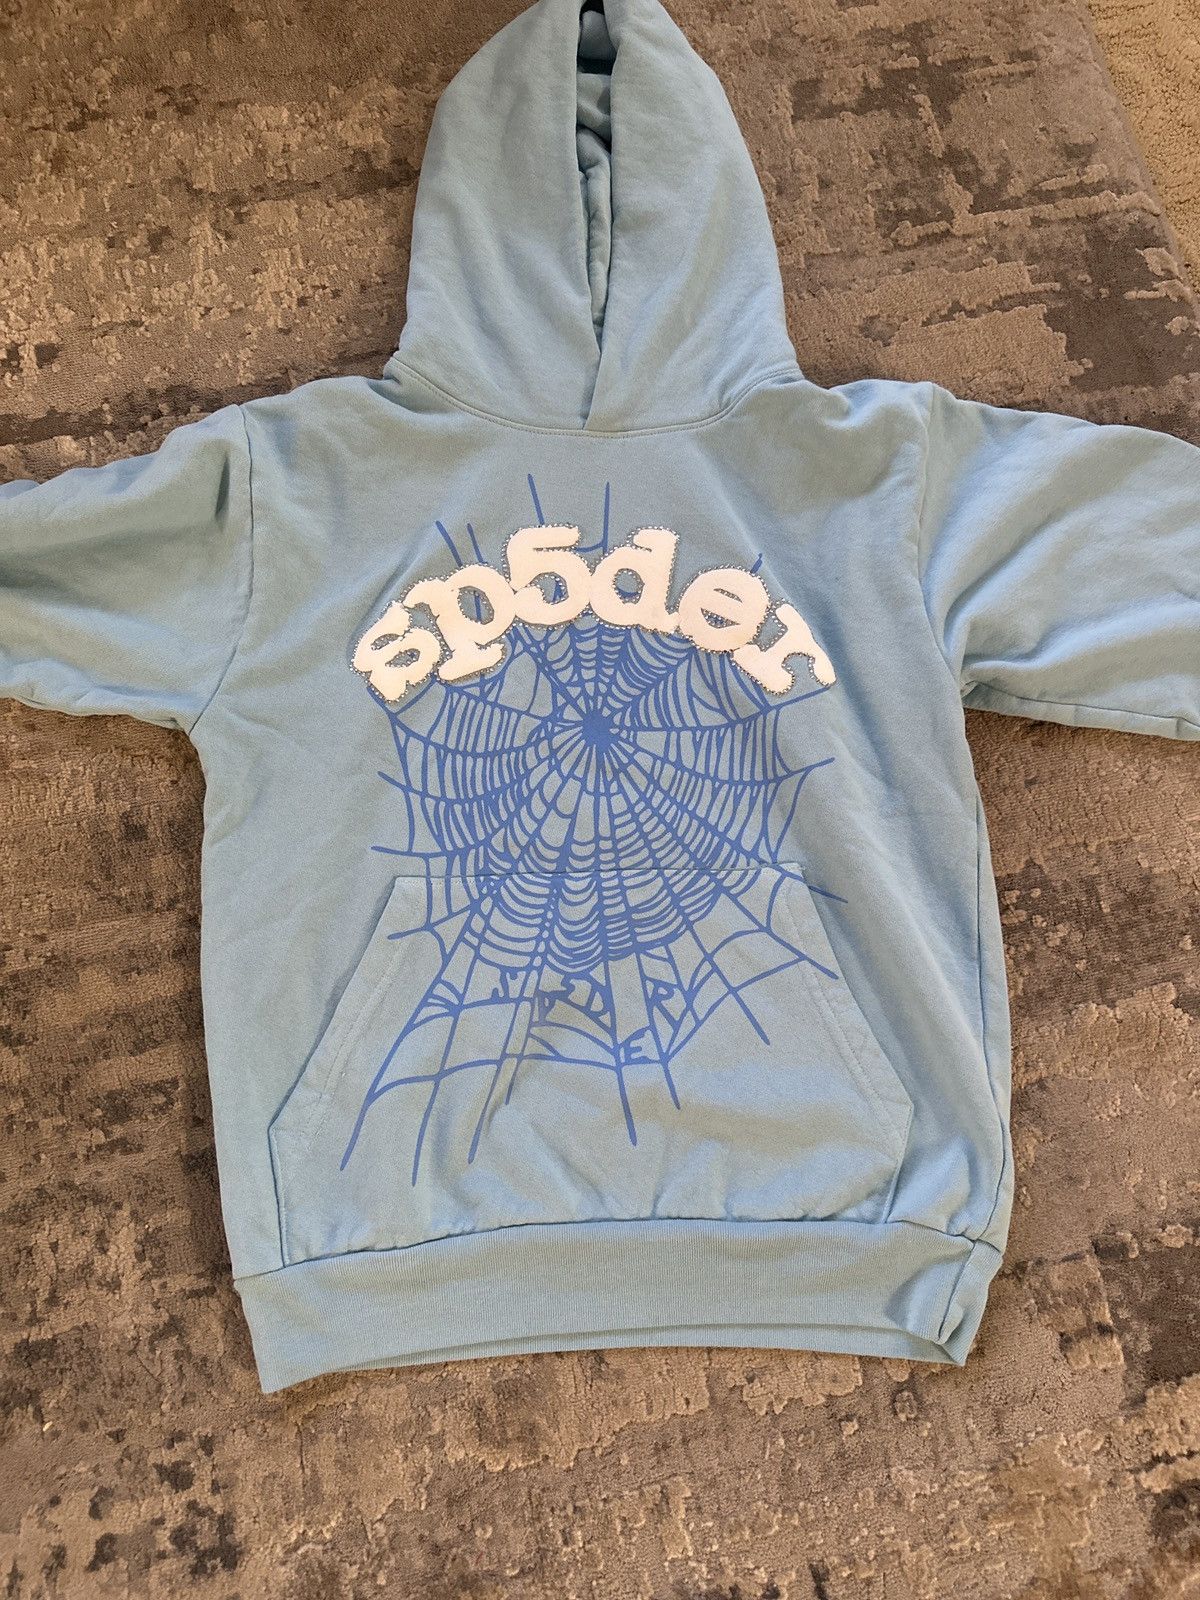 Spider Worldwide SP5DER BABY BLUE SKITTLES HOODIE | Grailed